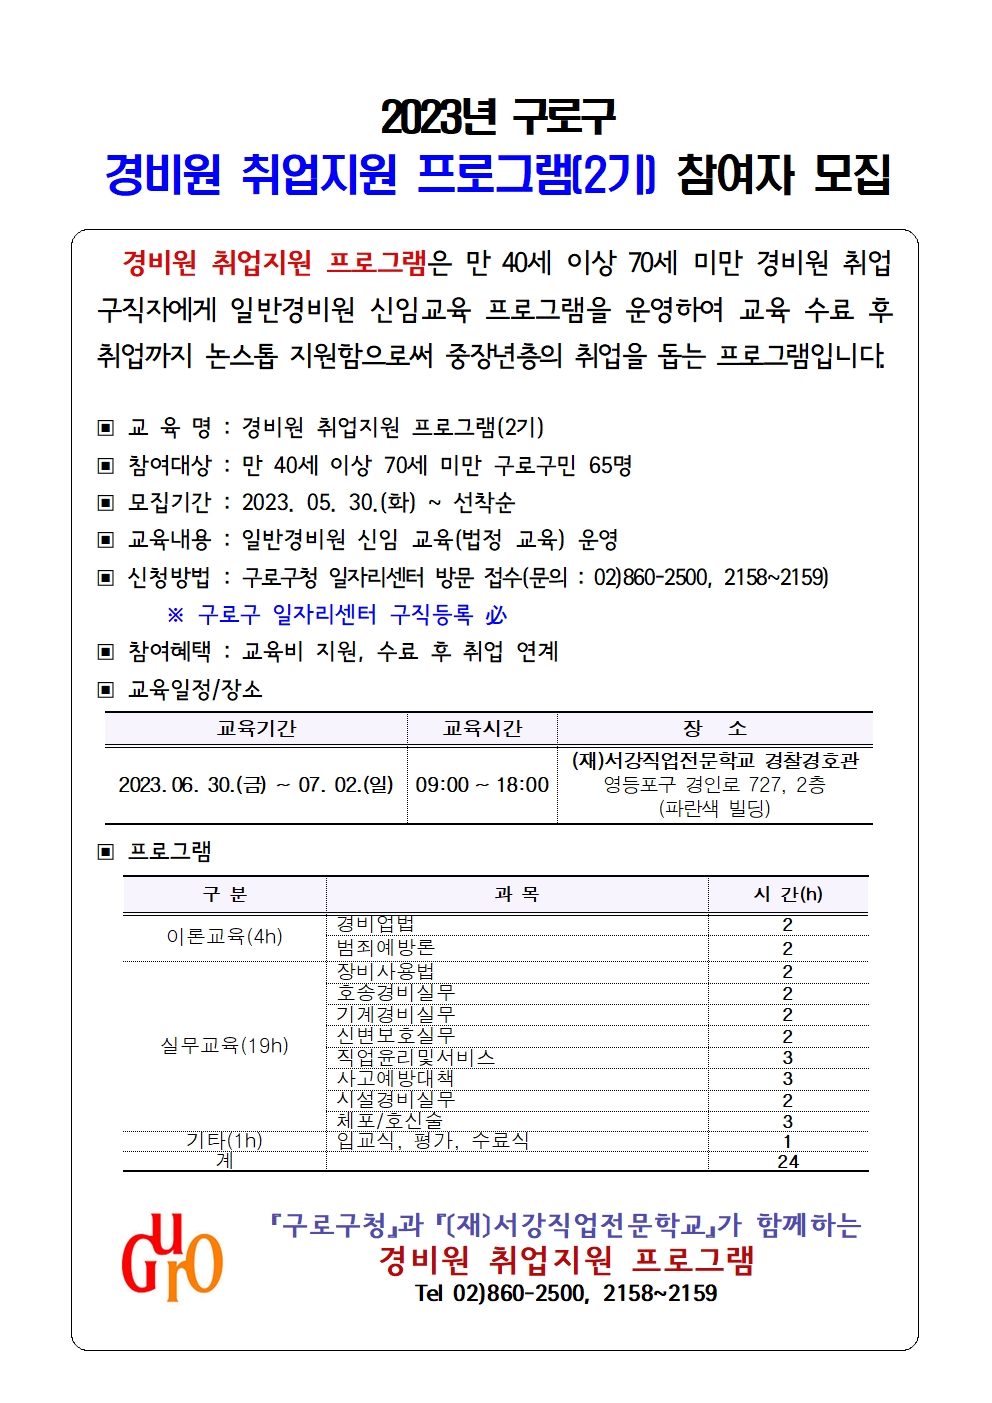 안내문(2023경비원 2기)_수정